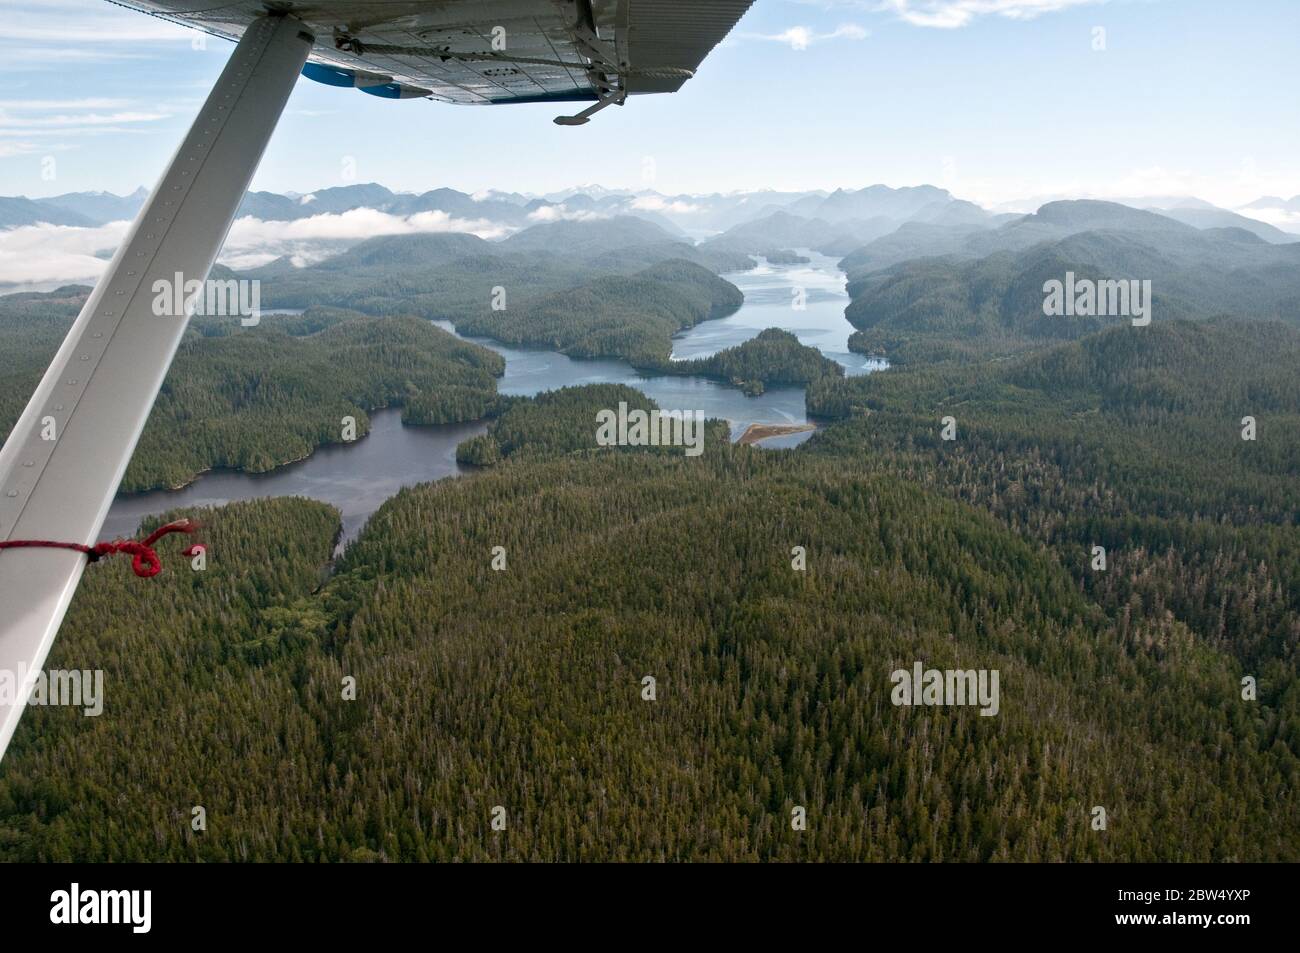 Eine Luftaufnahme des dichten Waldes und der pazifischen Küstengewässer des Great Bear Rainforest an der zentralen Küste in British Columbia, Kanada. Stockfoto